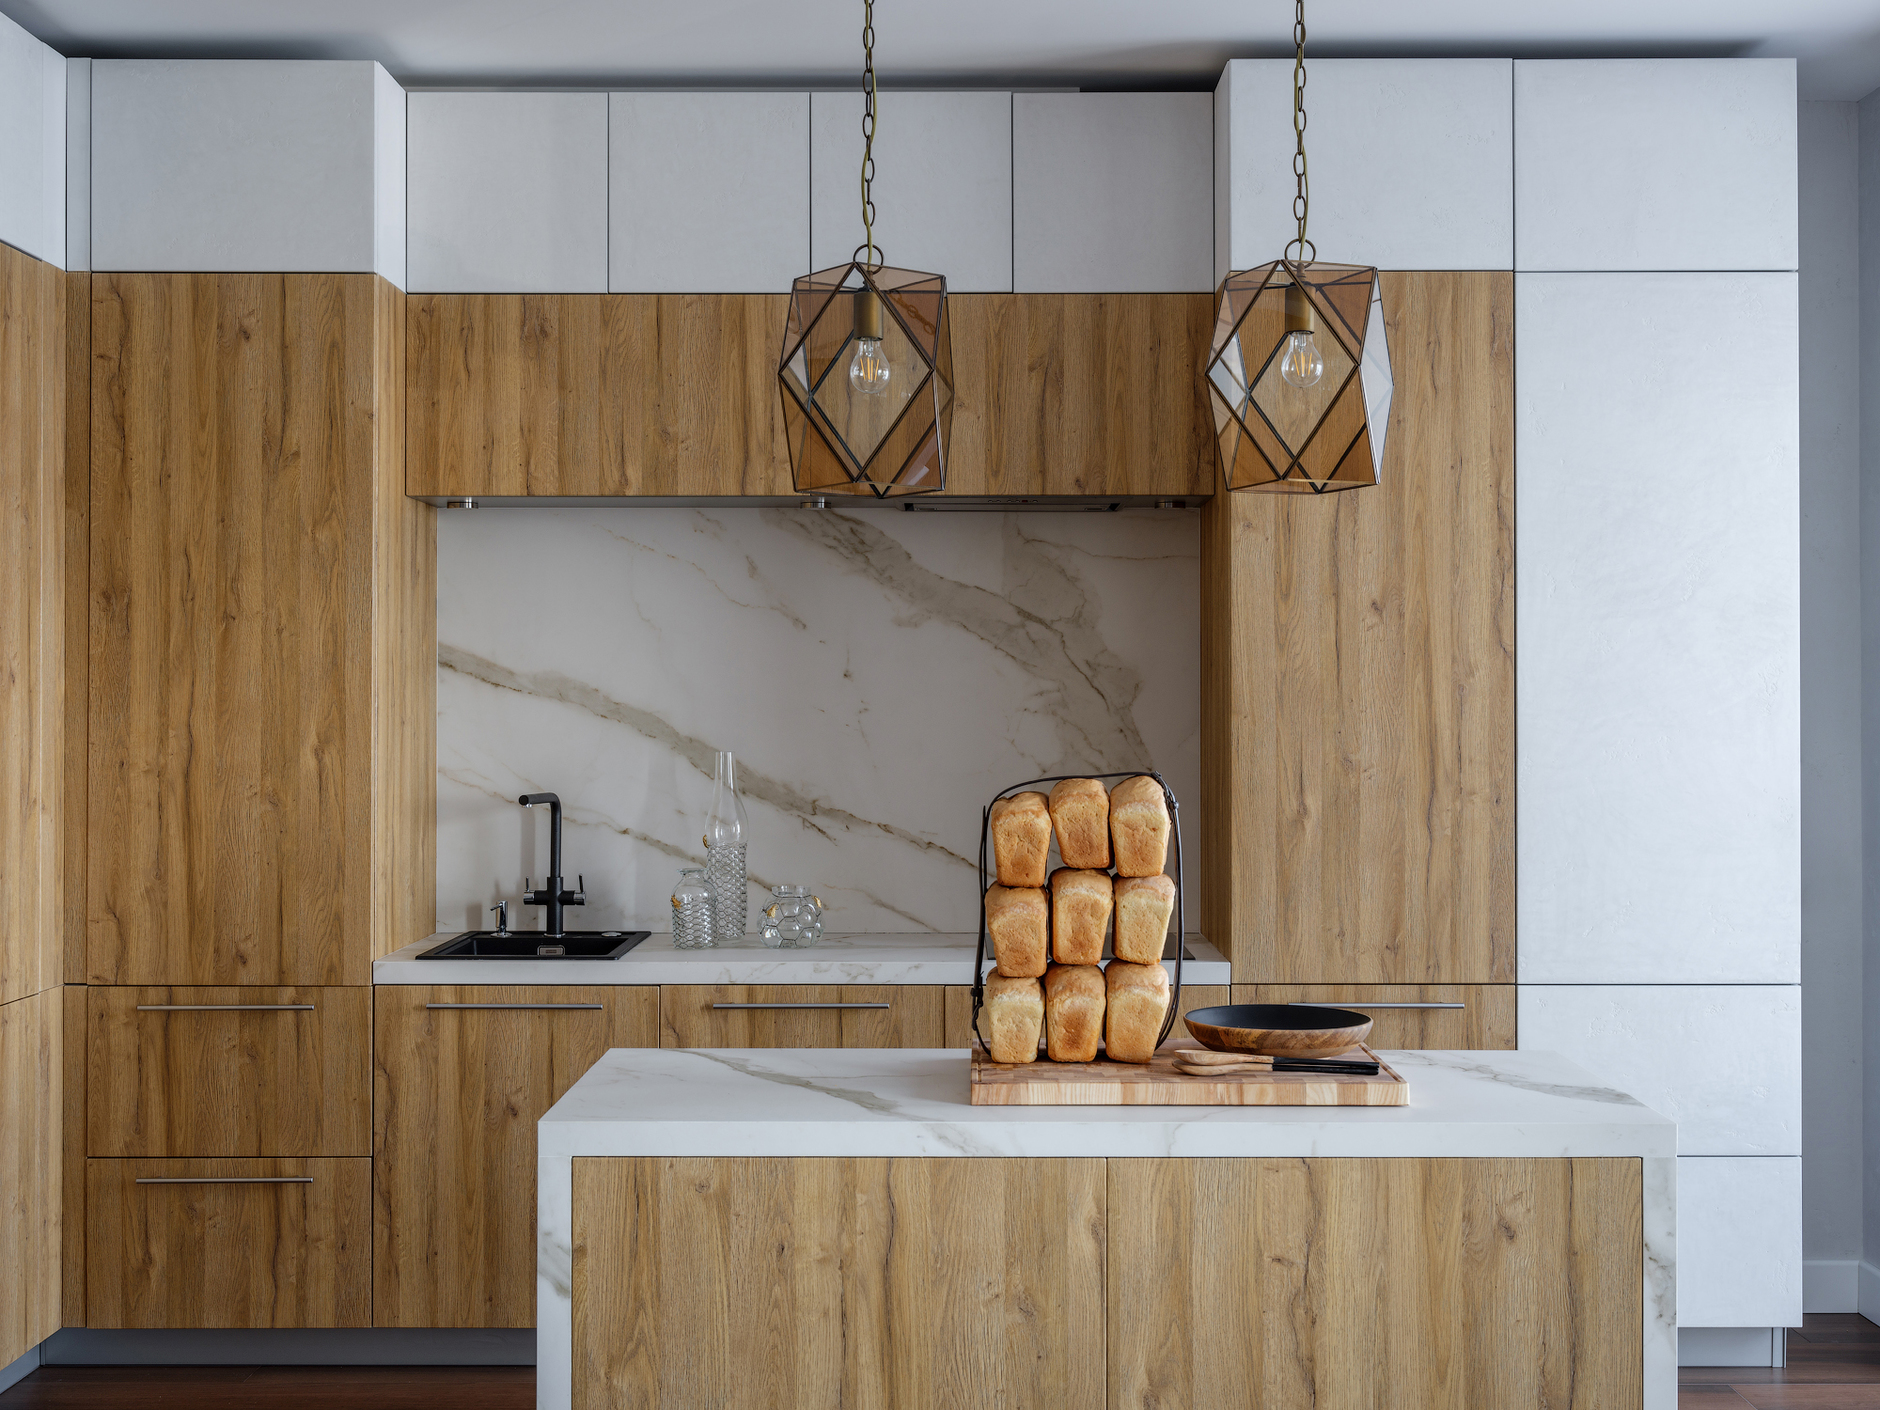 Phòng bếp là sự kết hợp hệ tủ lưu trữ màu xám và gỗ, tương đồng với sự phối màu của đảo bếp ở khu vực trung tâm. Những chiếc đèn thả trần phong cách cổ điển của Ý cùng với mặt bàn và khu vực backsplash ốp đá cẩm thạch càng thêm sang trọng.